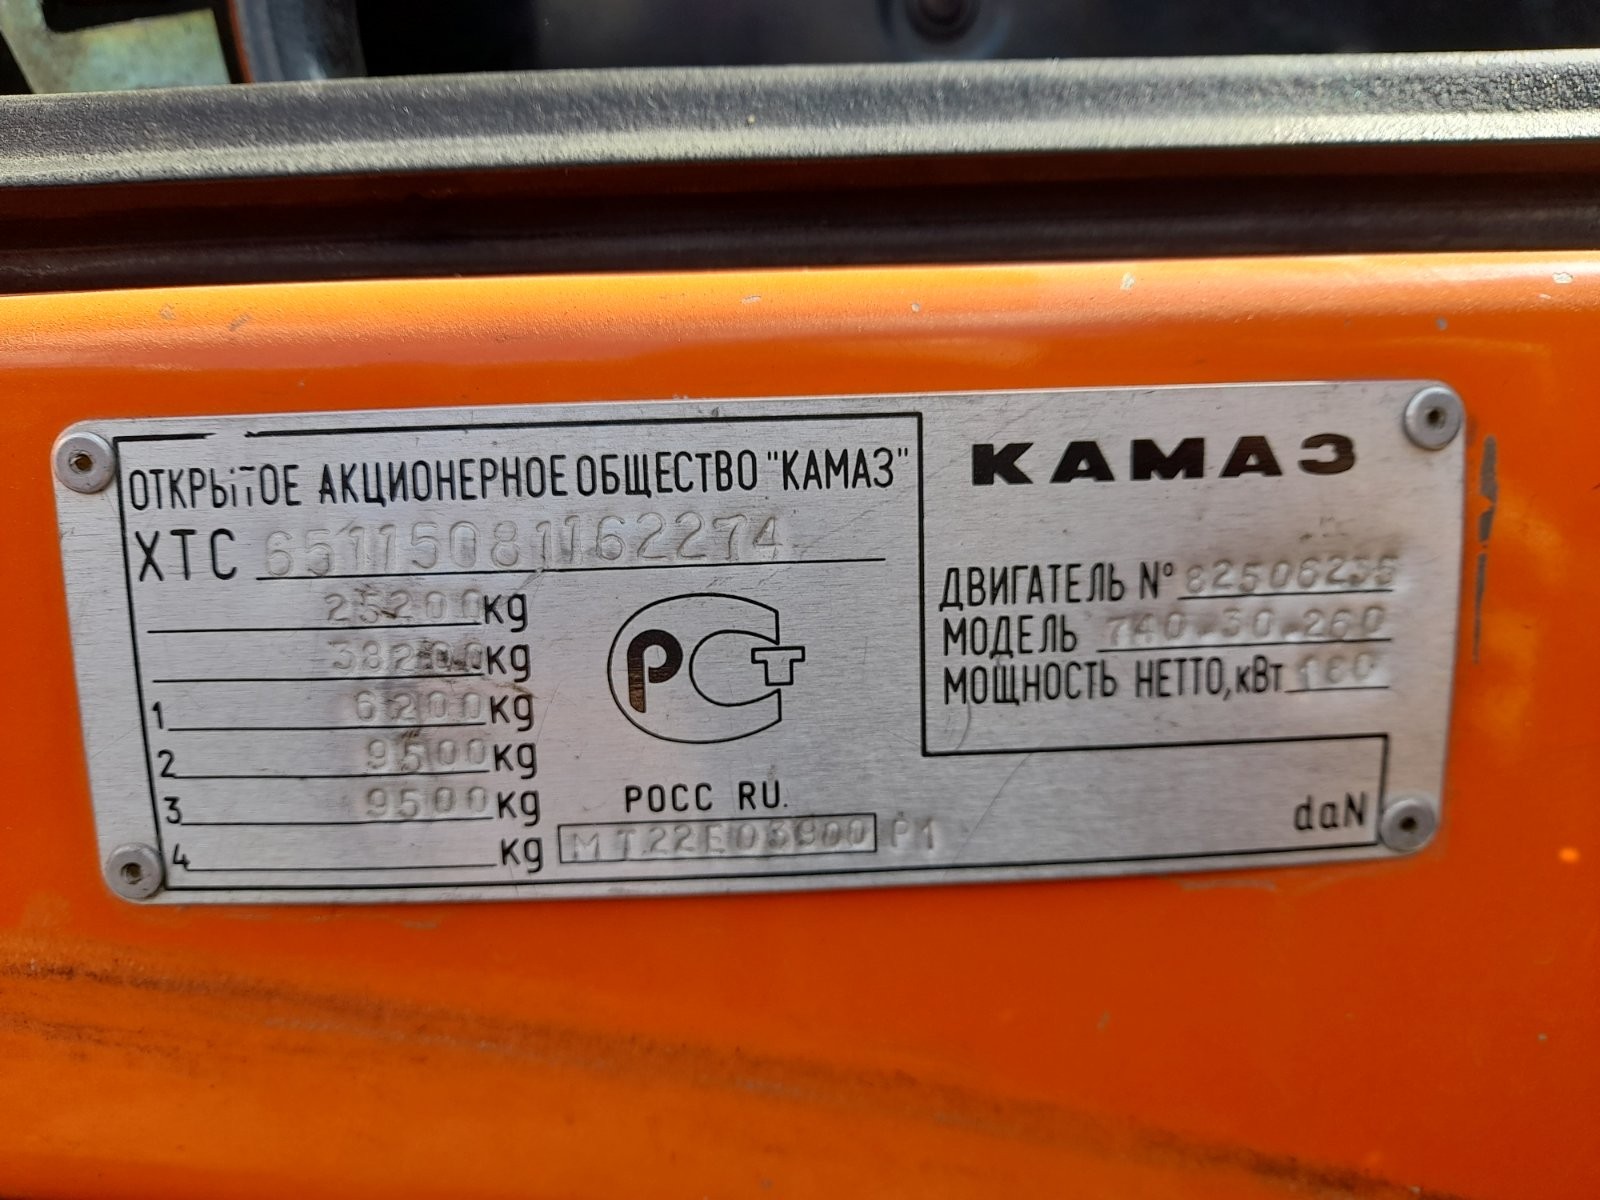 Транспортное средство КамАЗ-65115, 2008 года выпуска, идентификационный номер (VIN) XTC6511508116227